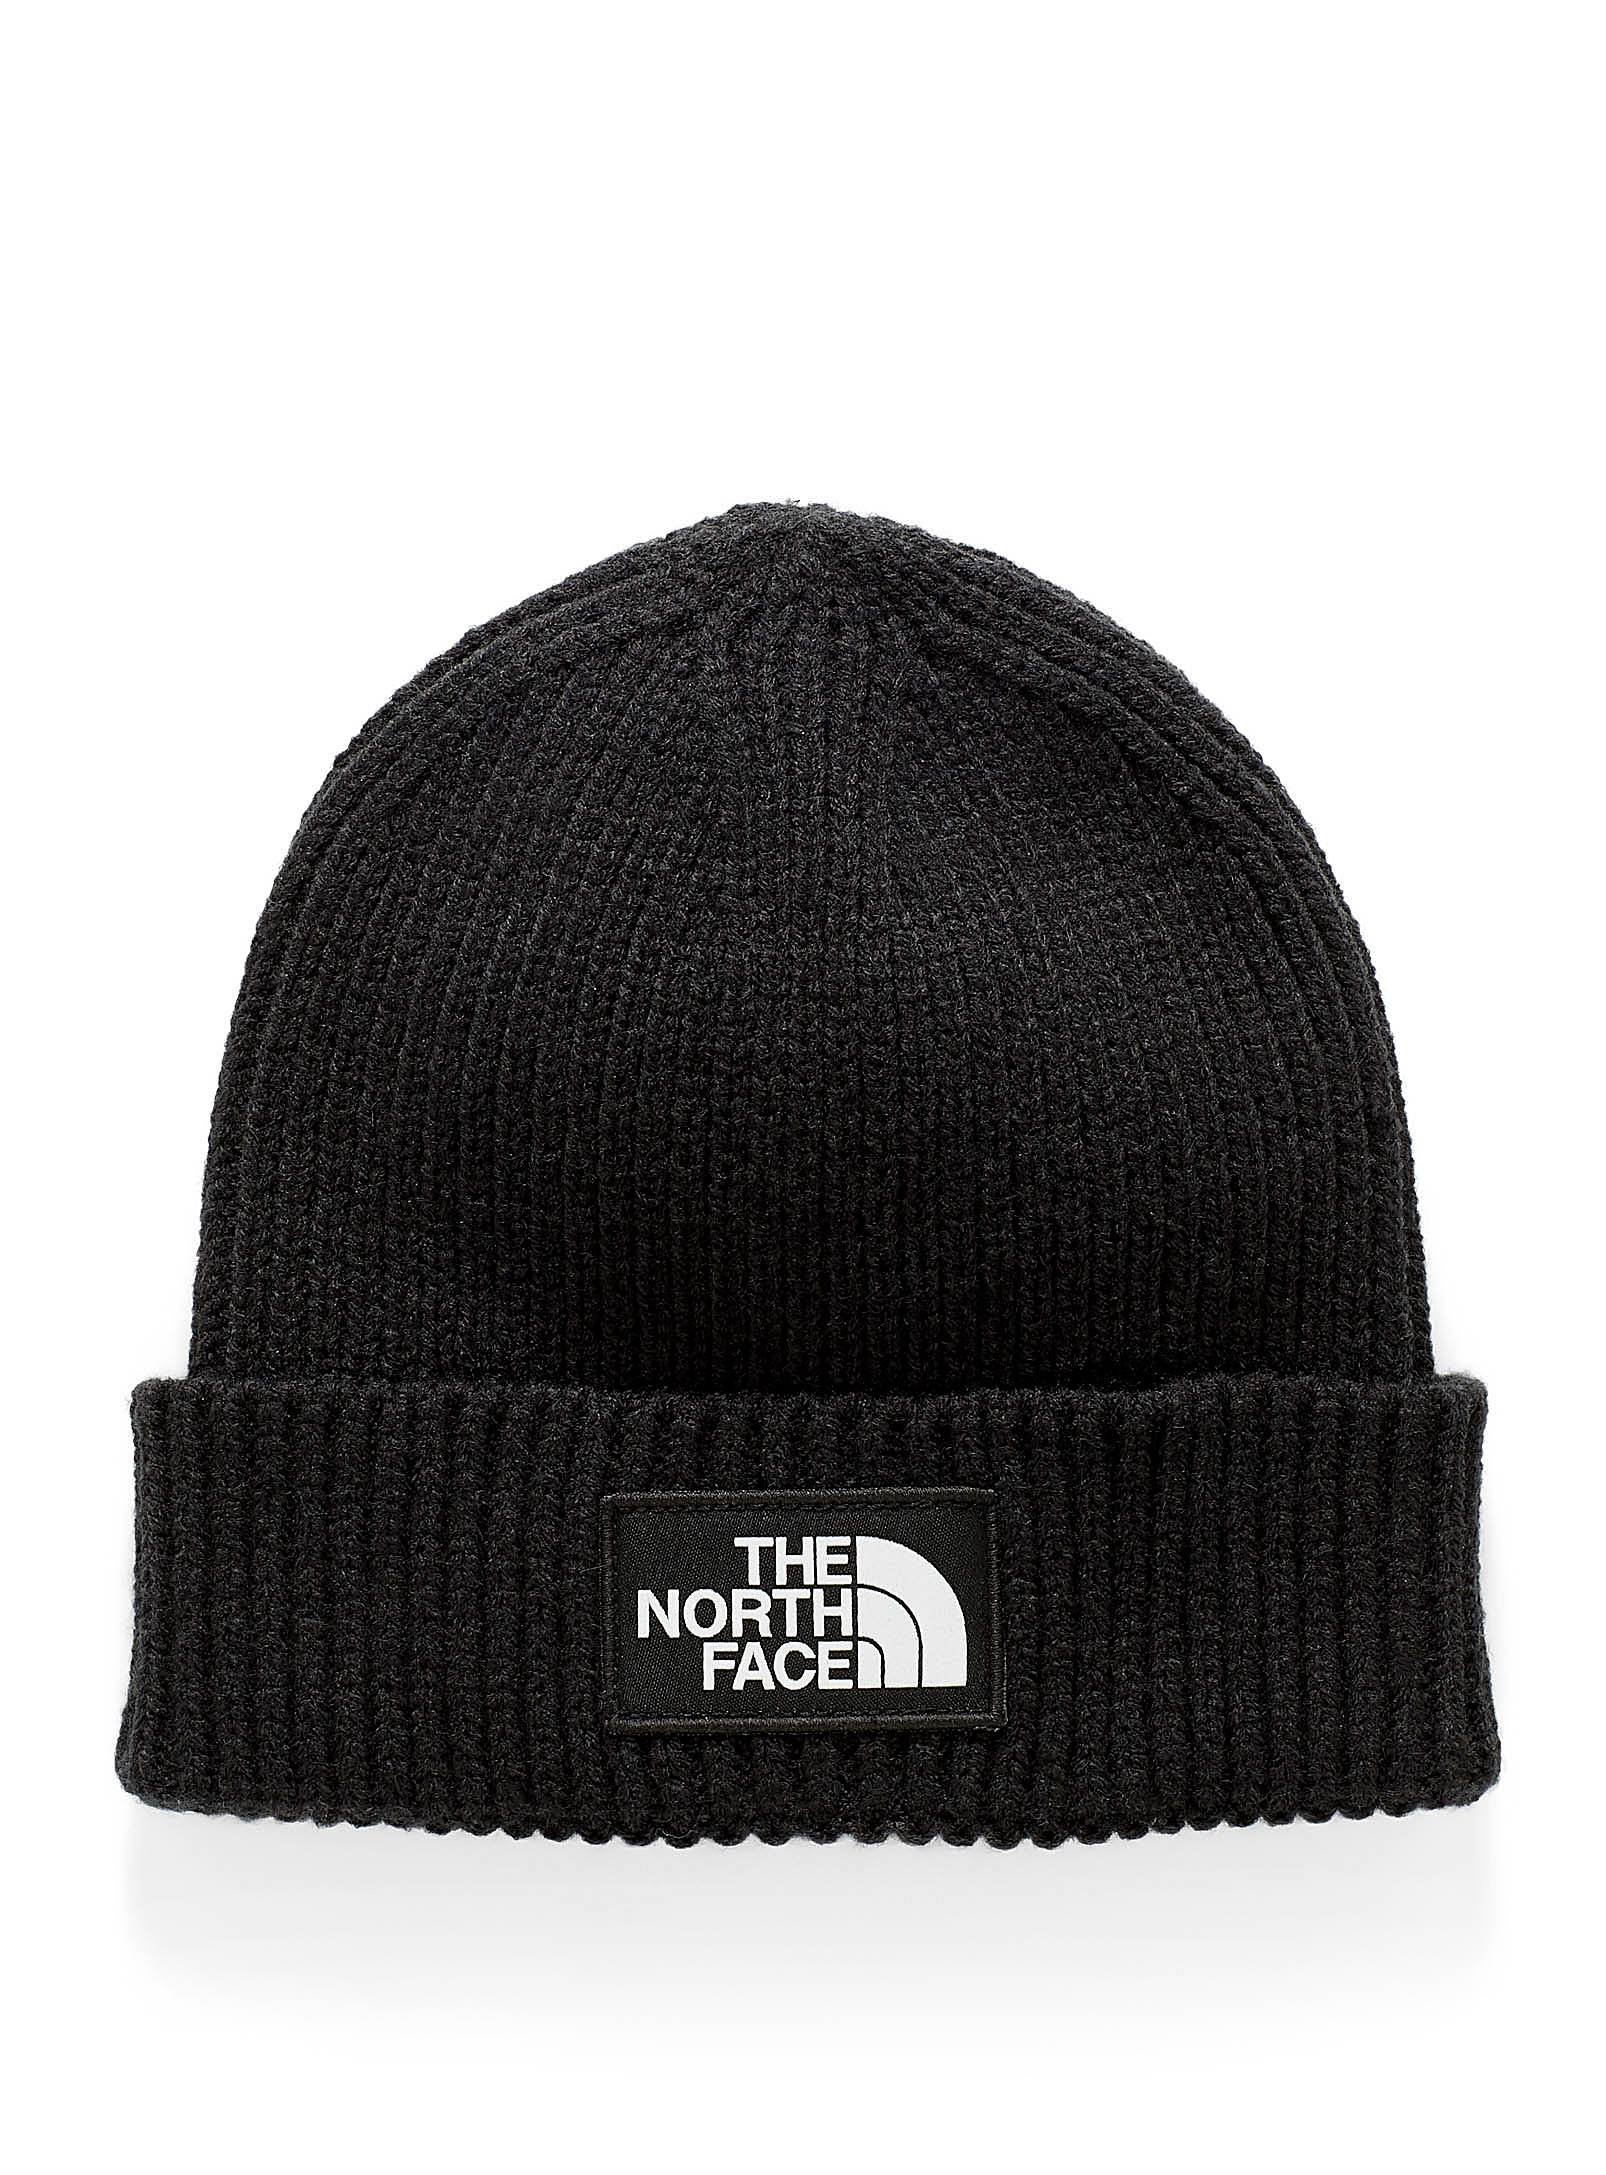 The North Face - La tuque tricot côtelé logo